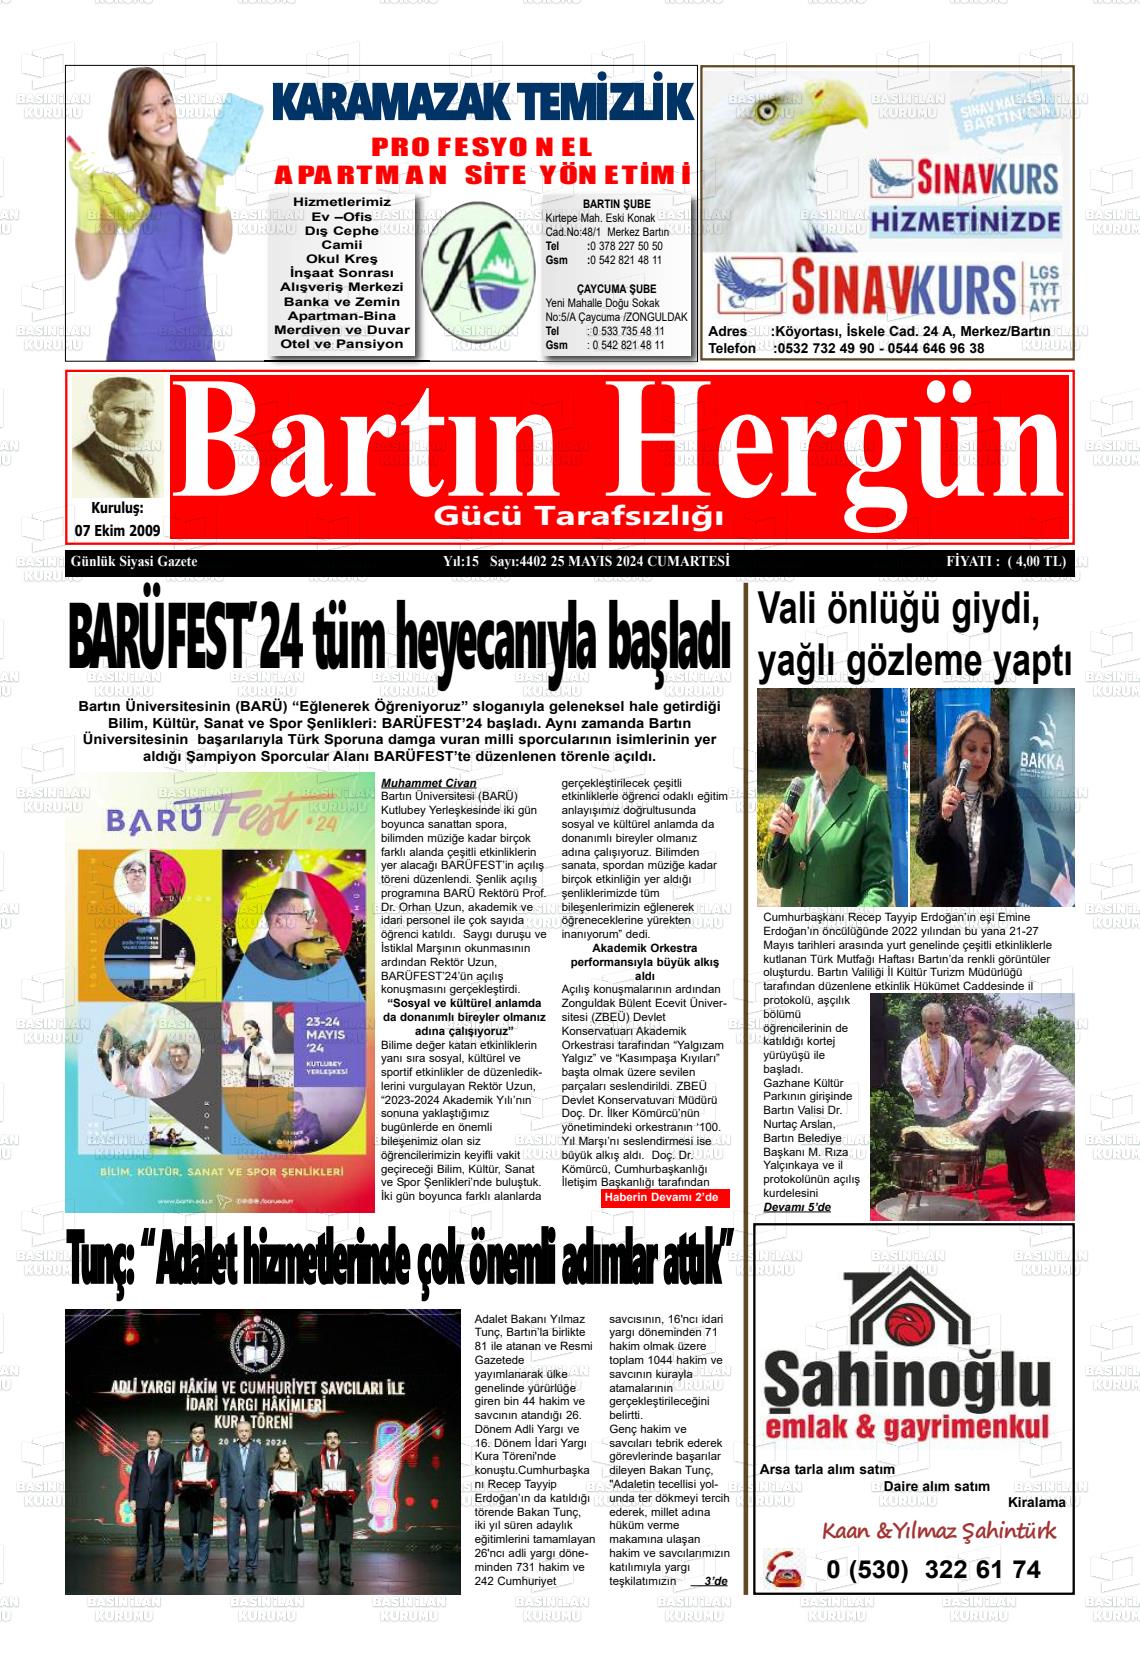 BARTIN HERGÜN Gazetesi